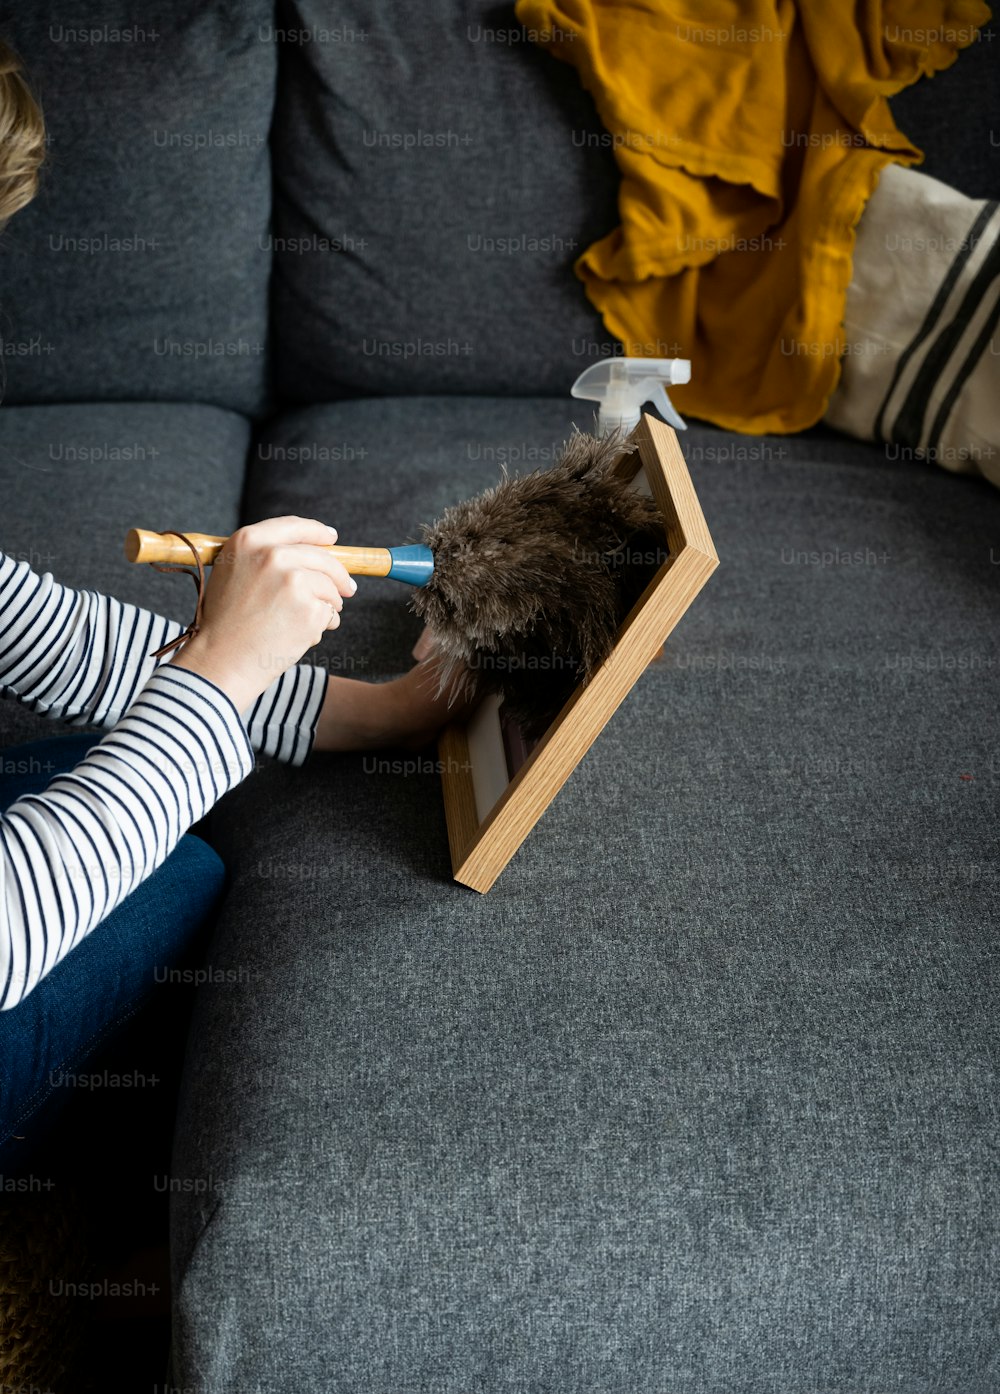 Eine Frau sitzt auf einer Couch und hält eine Schere in der Hand